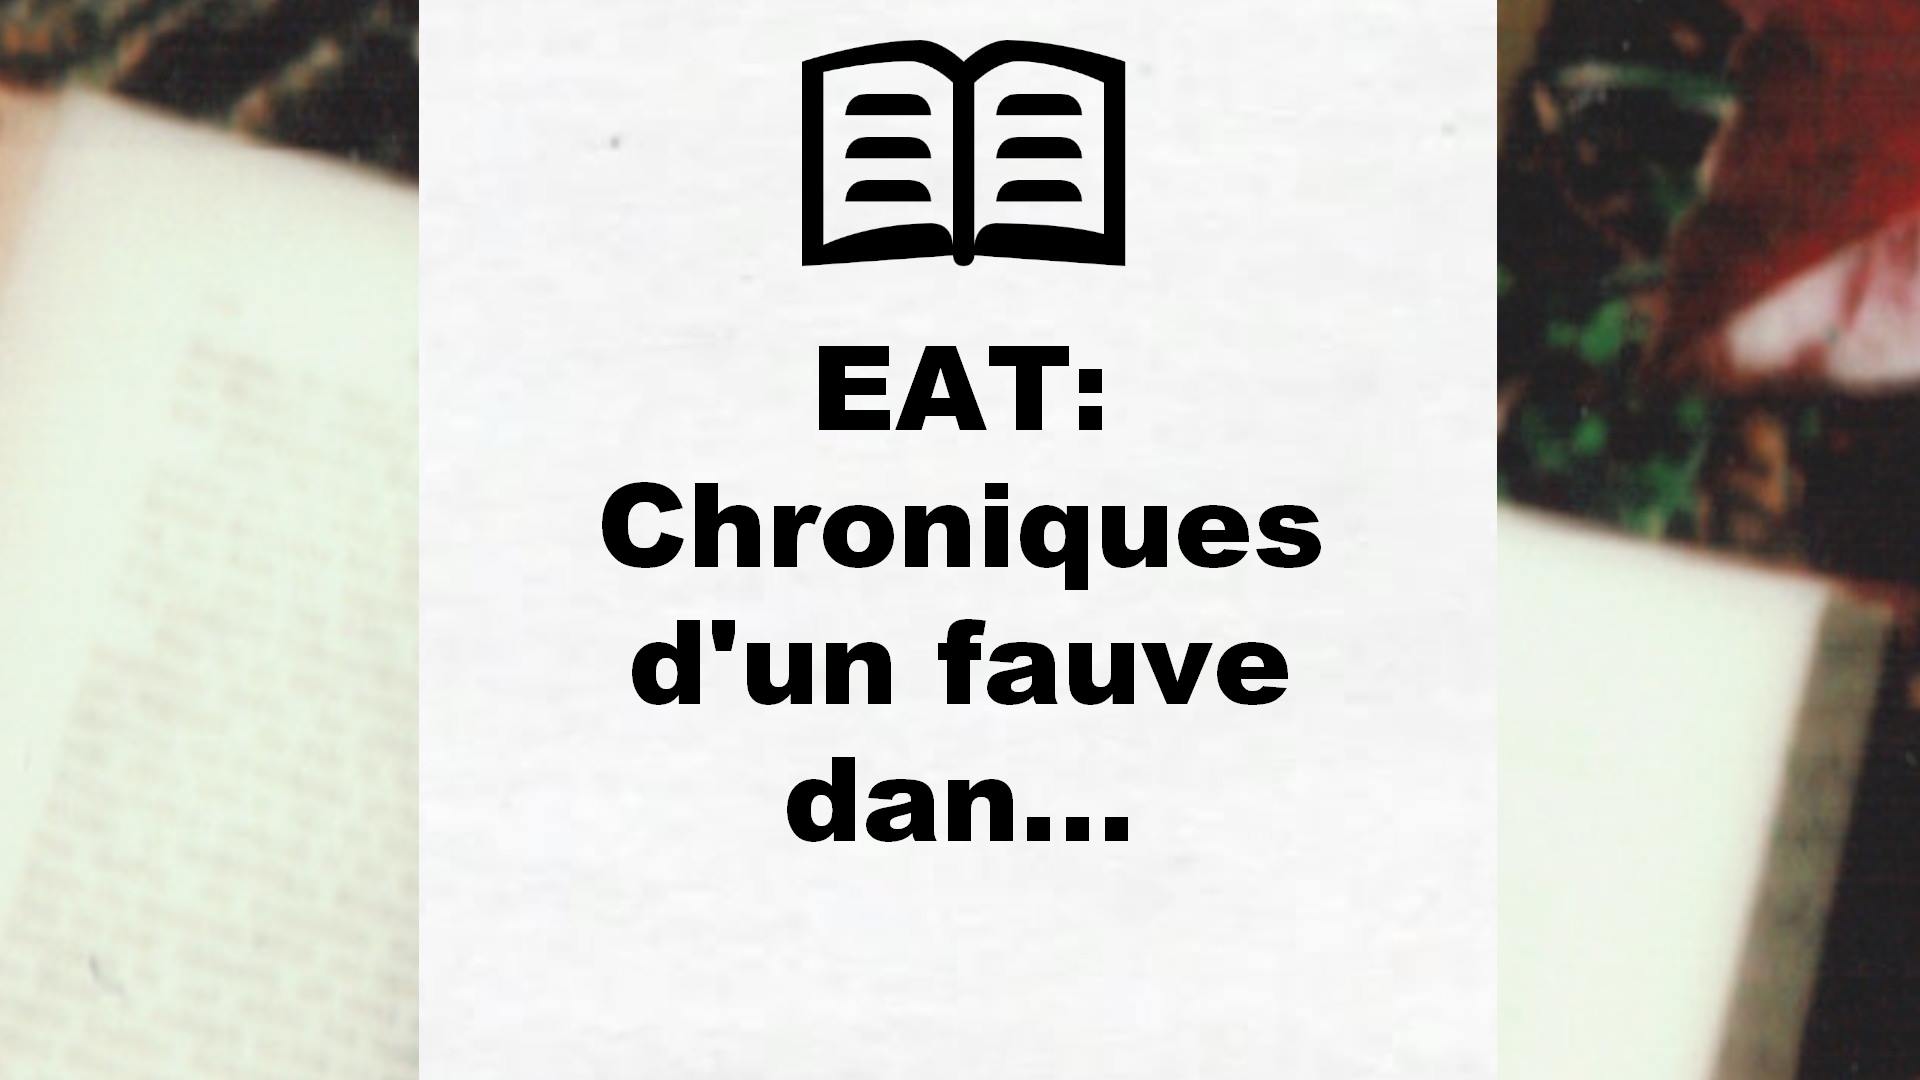 EAT: Chroniques d’un fauve dan… – Critique